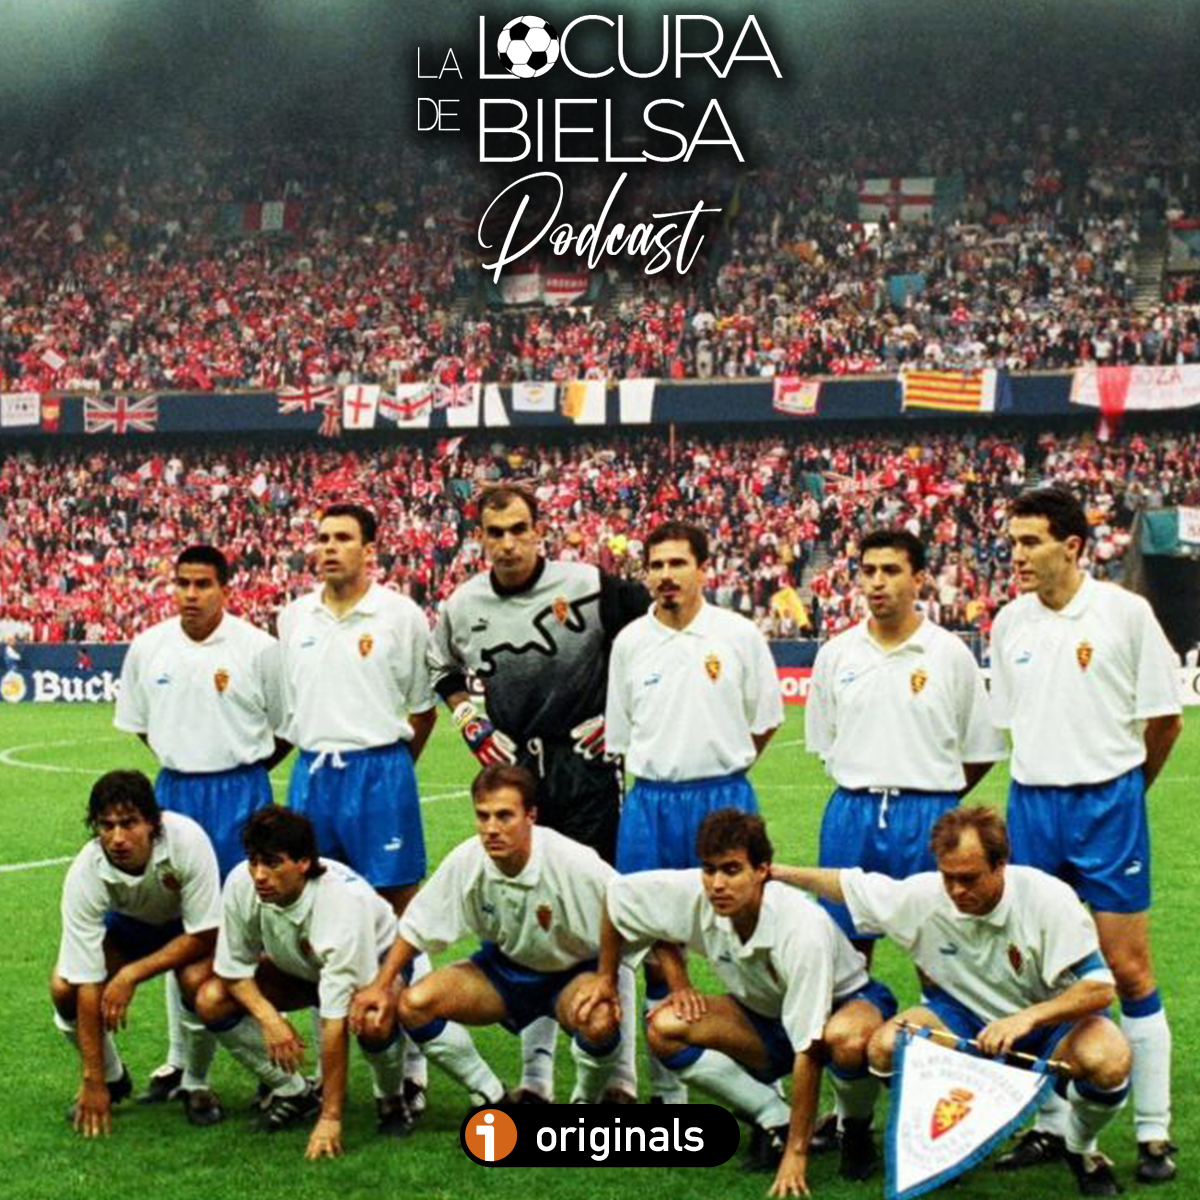 Recopa Zaragoza 1995 portada Locura